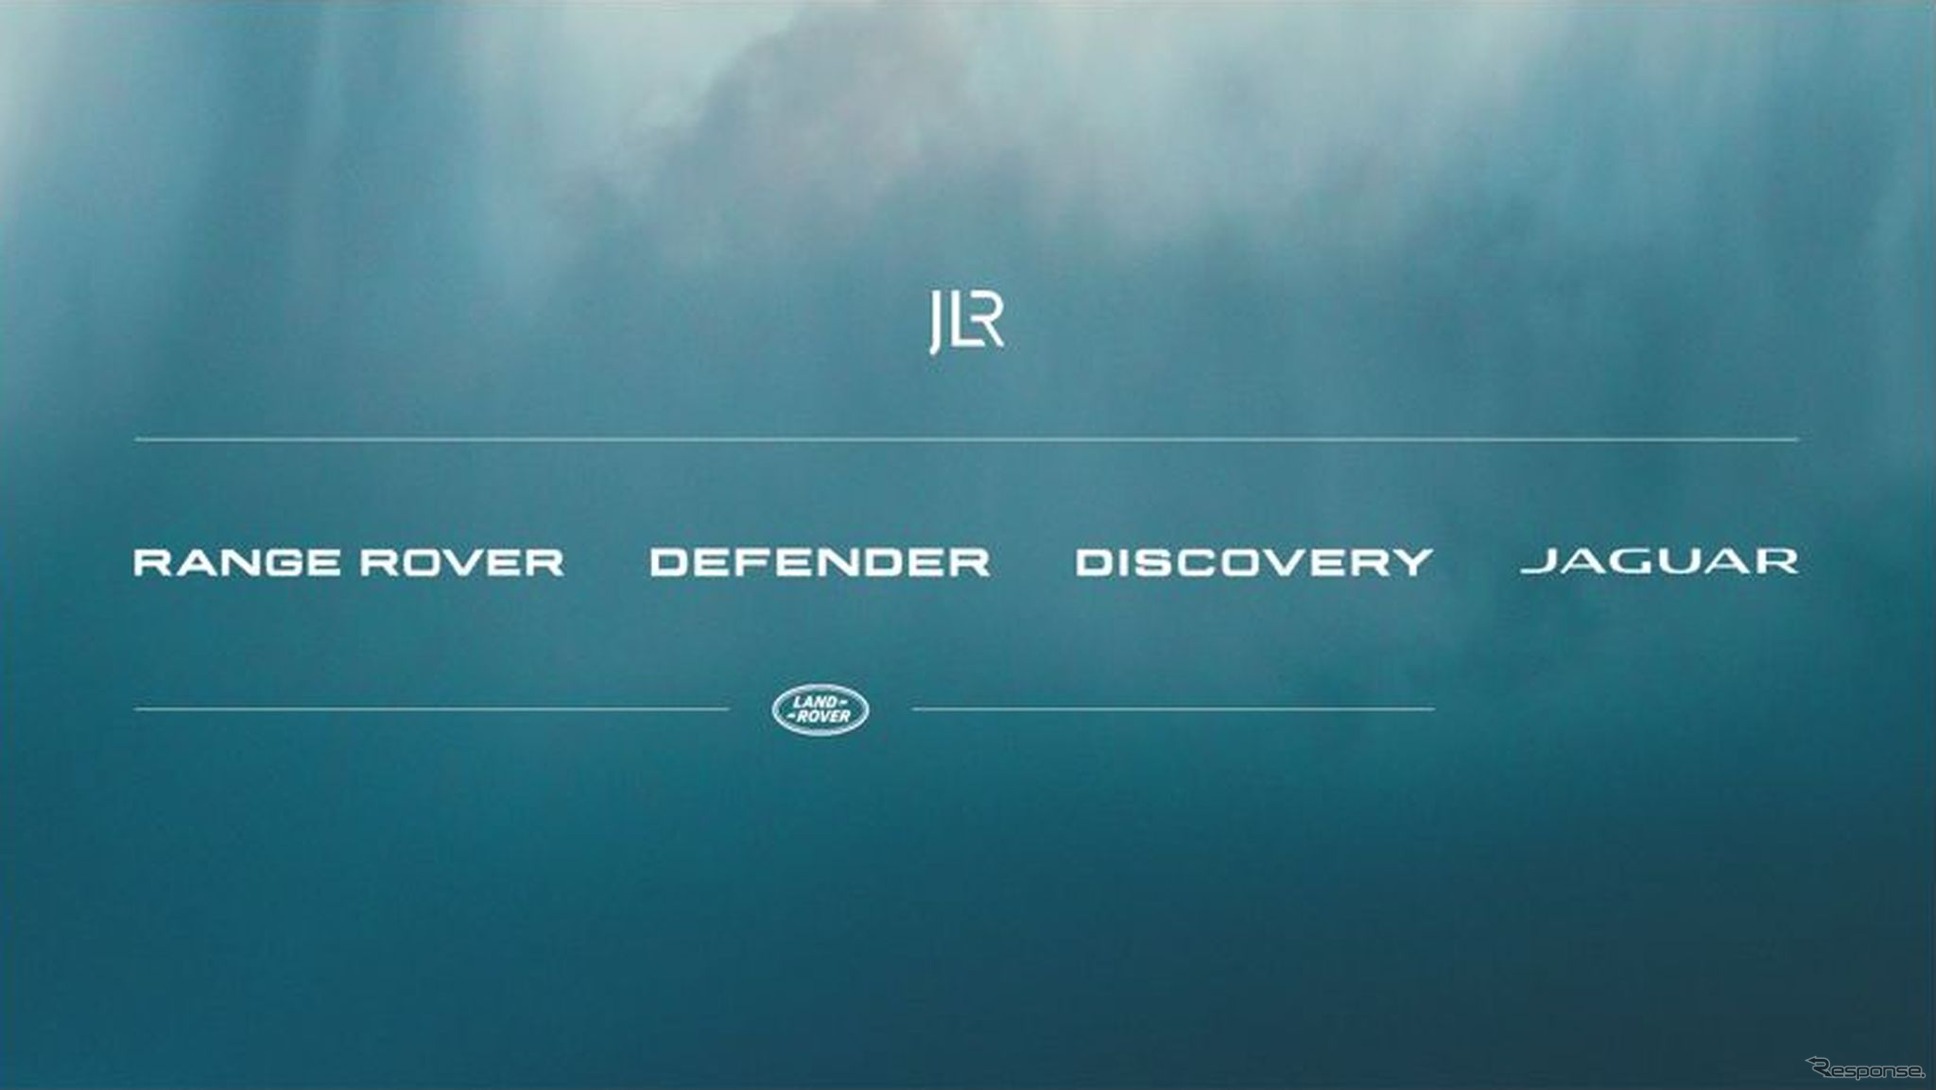 JLRのロゴと傘下の4ブランド（レンジローバー、ディフェンダー、ディスカバリー、ジャガー）